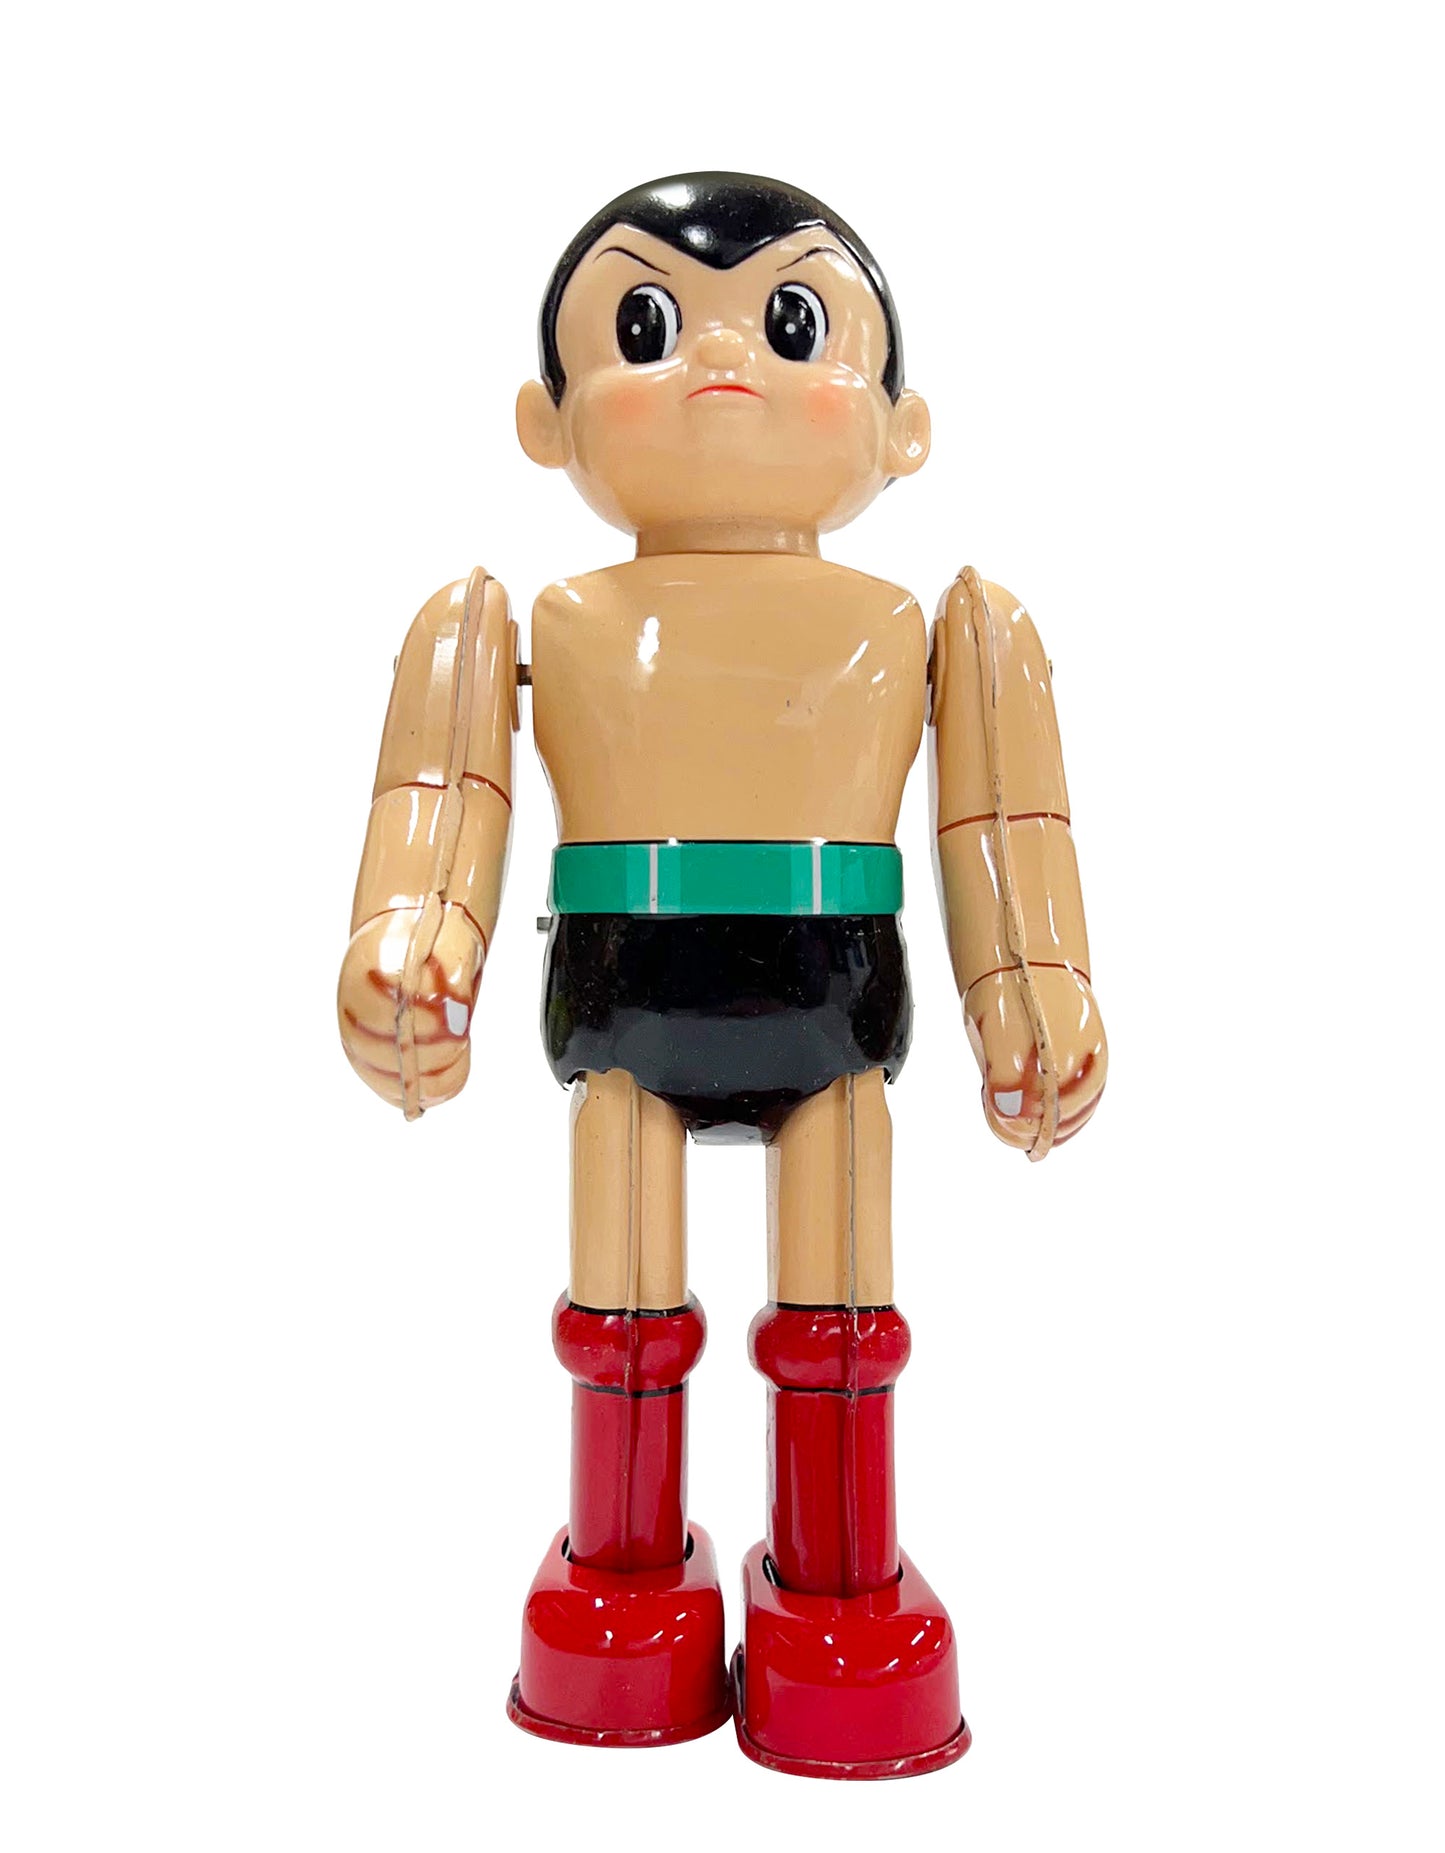 Billiken Shokai: Tezuka Productions - Astro Boy Mighty Atom Tin Toy Wind Up Made in Japan